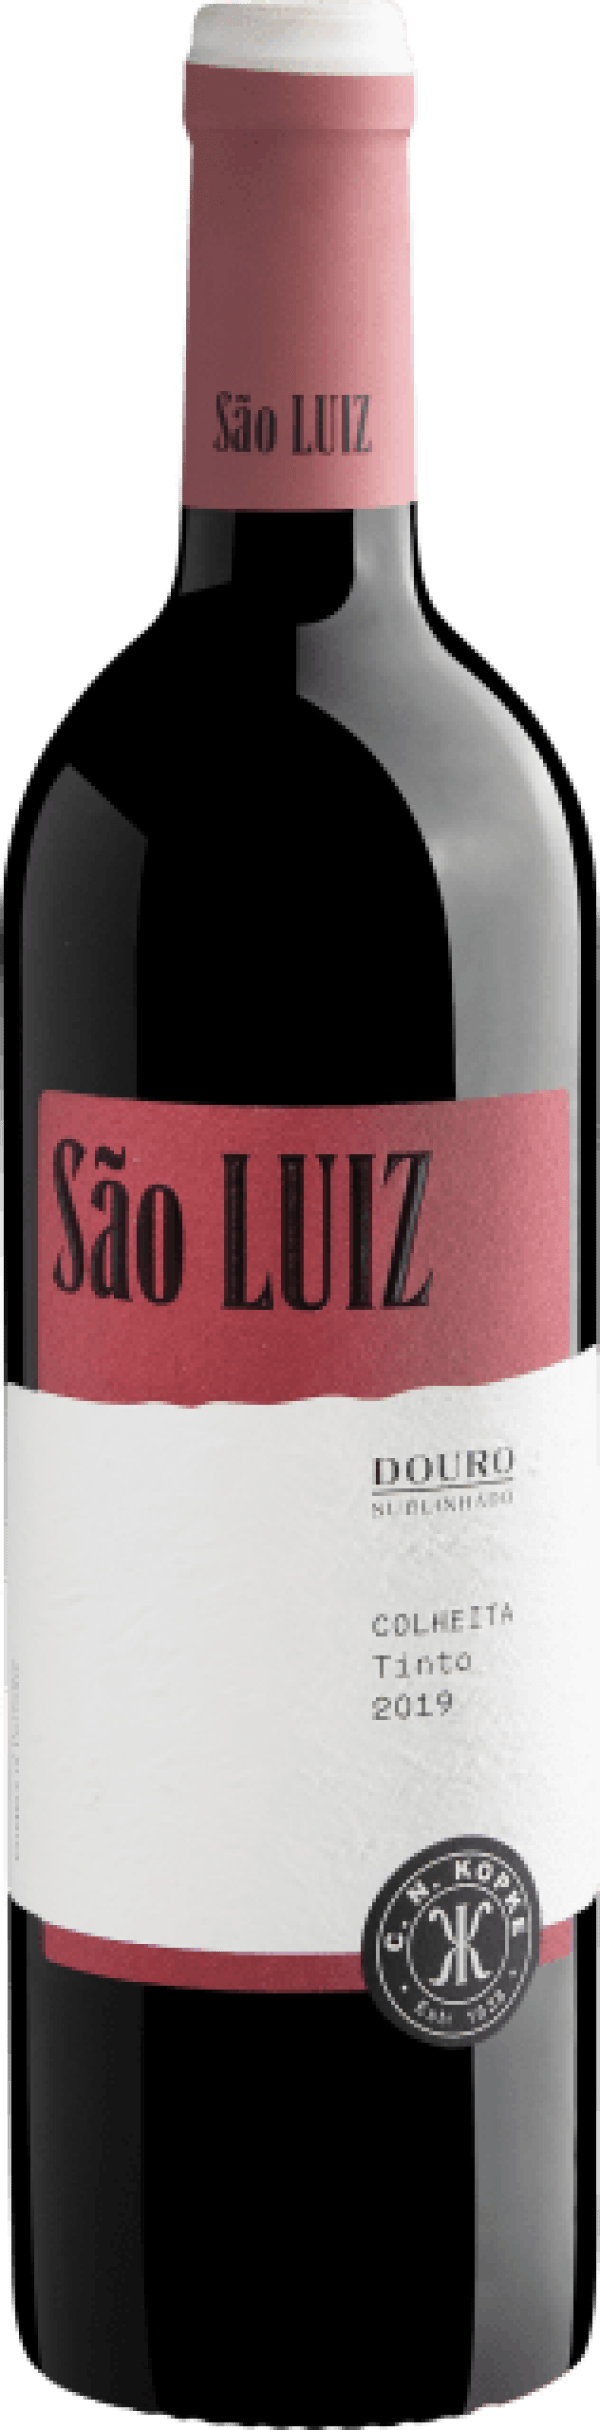 São Luiz Douro DOC 2019